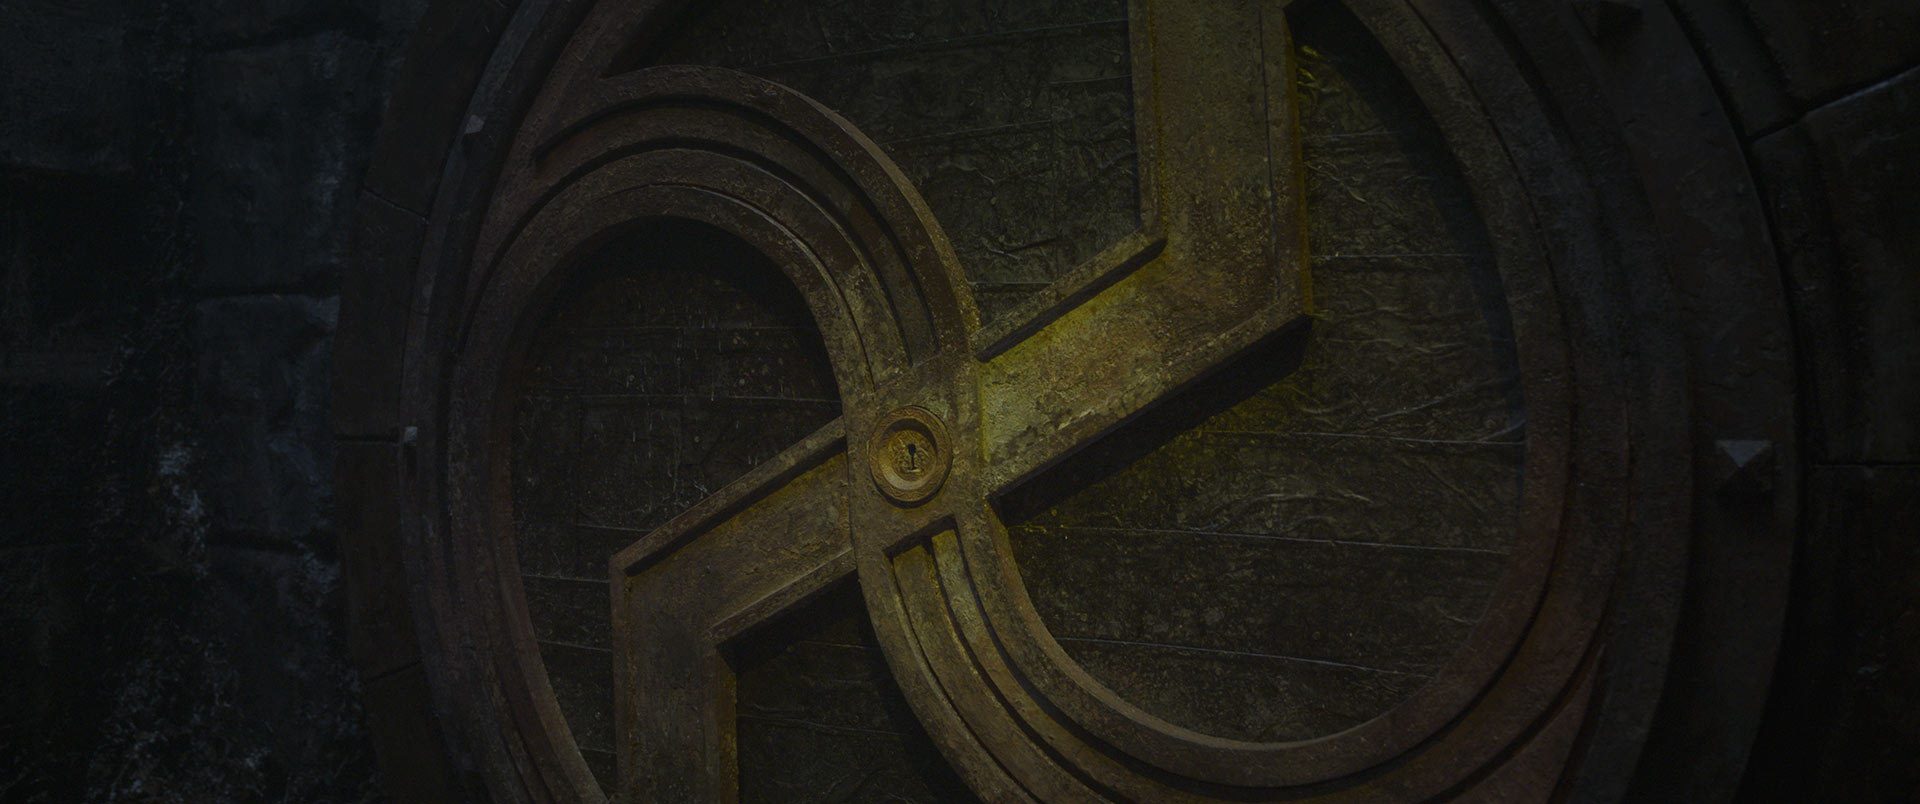 The bronze symbol on the vault door